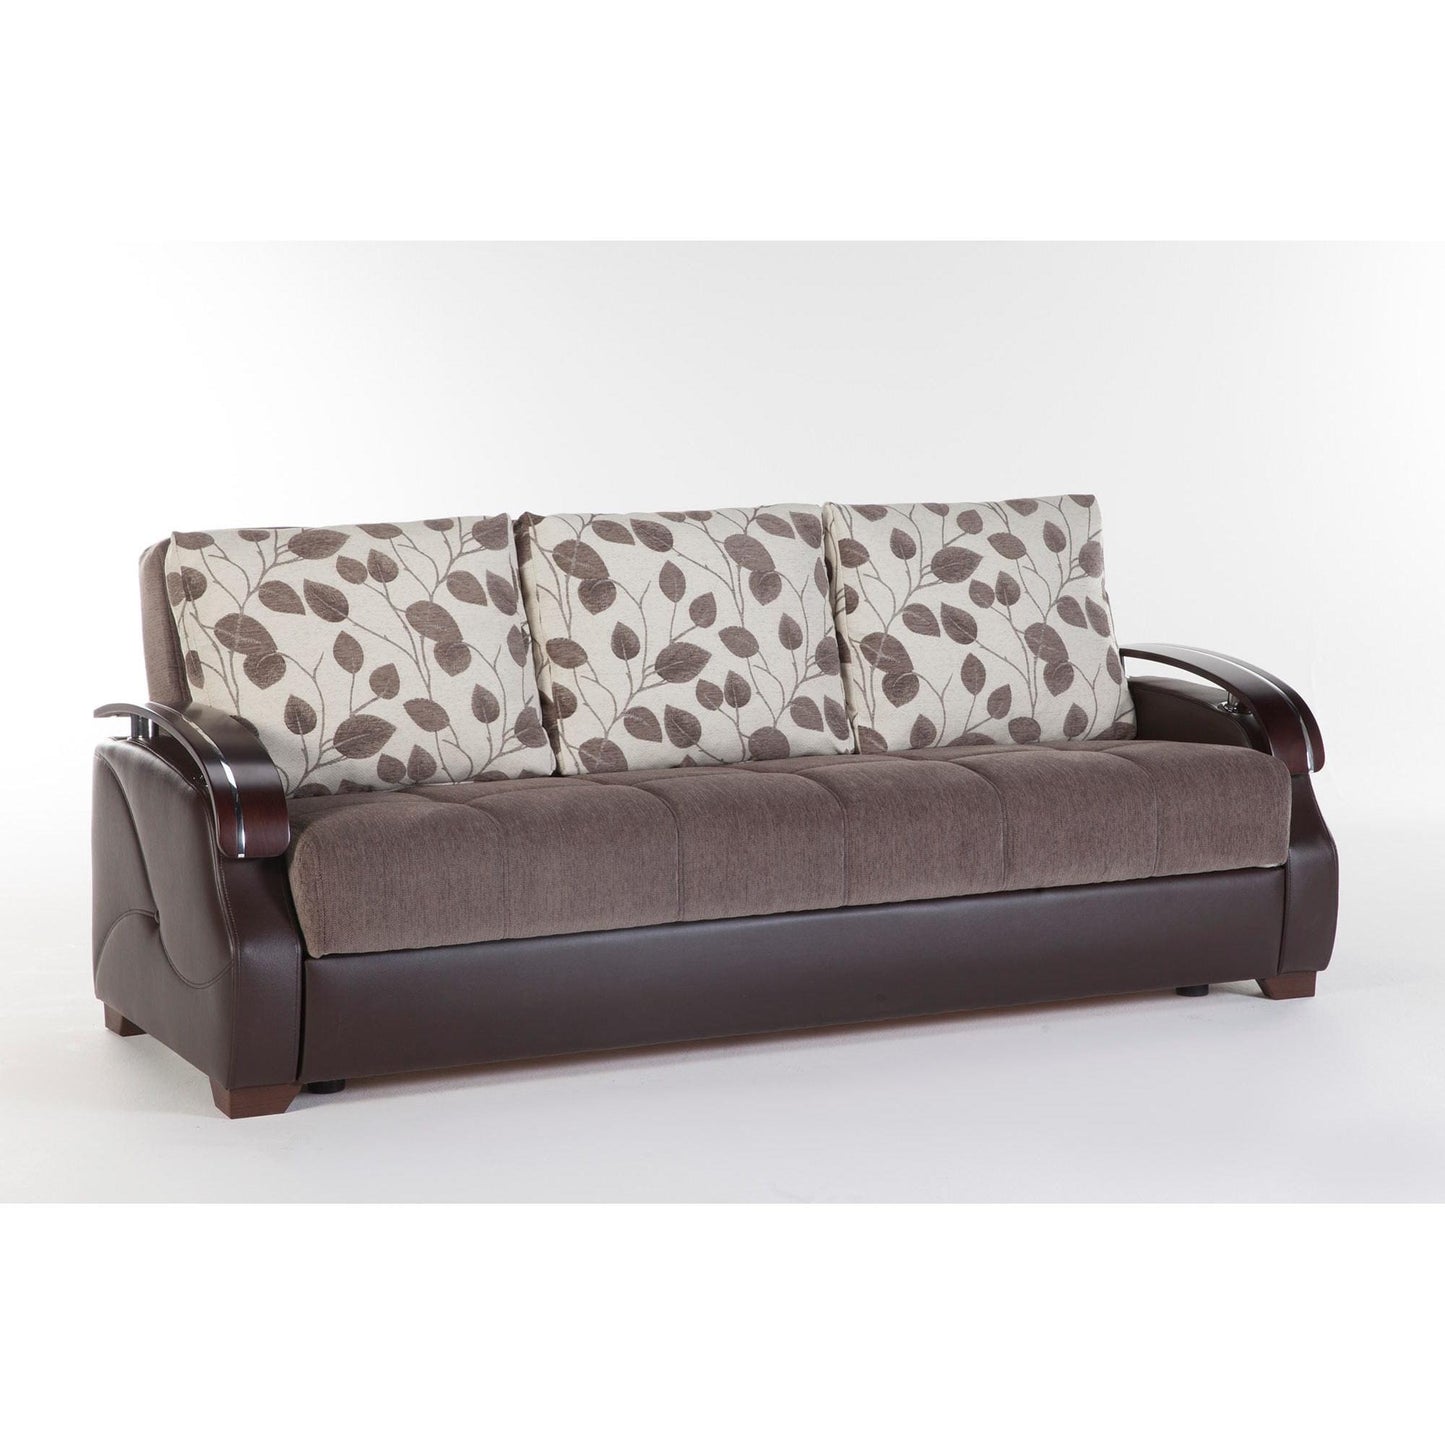 Costa Sofa Bed in Armoni Brown